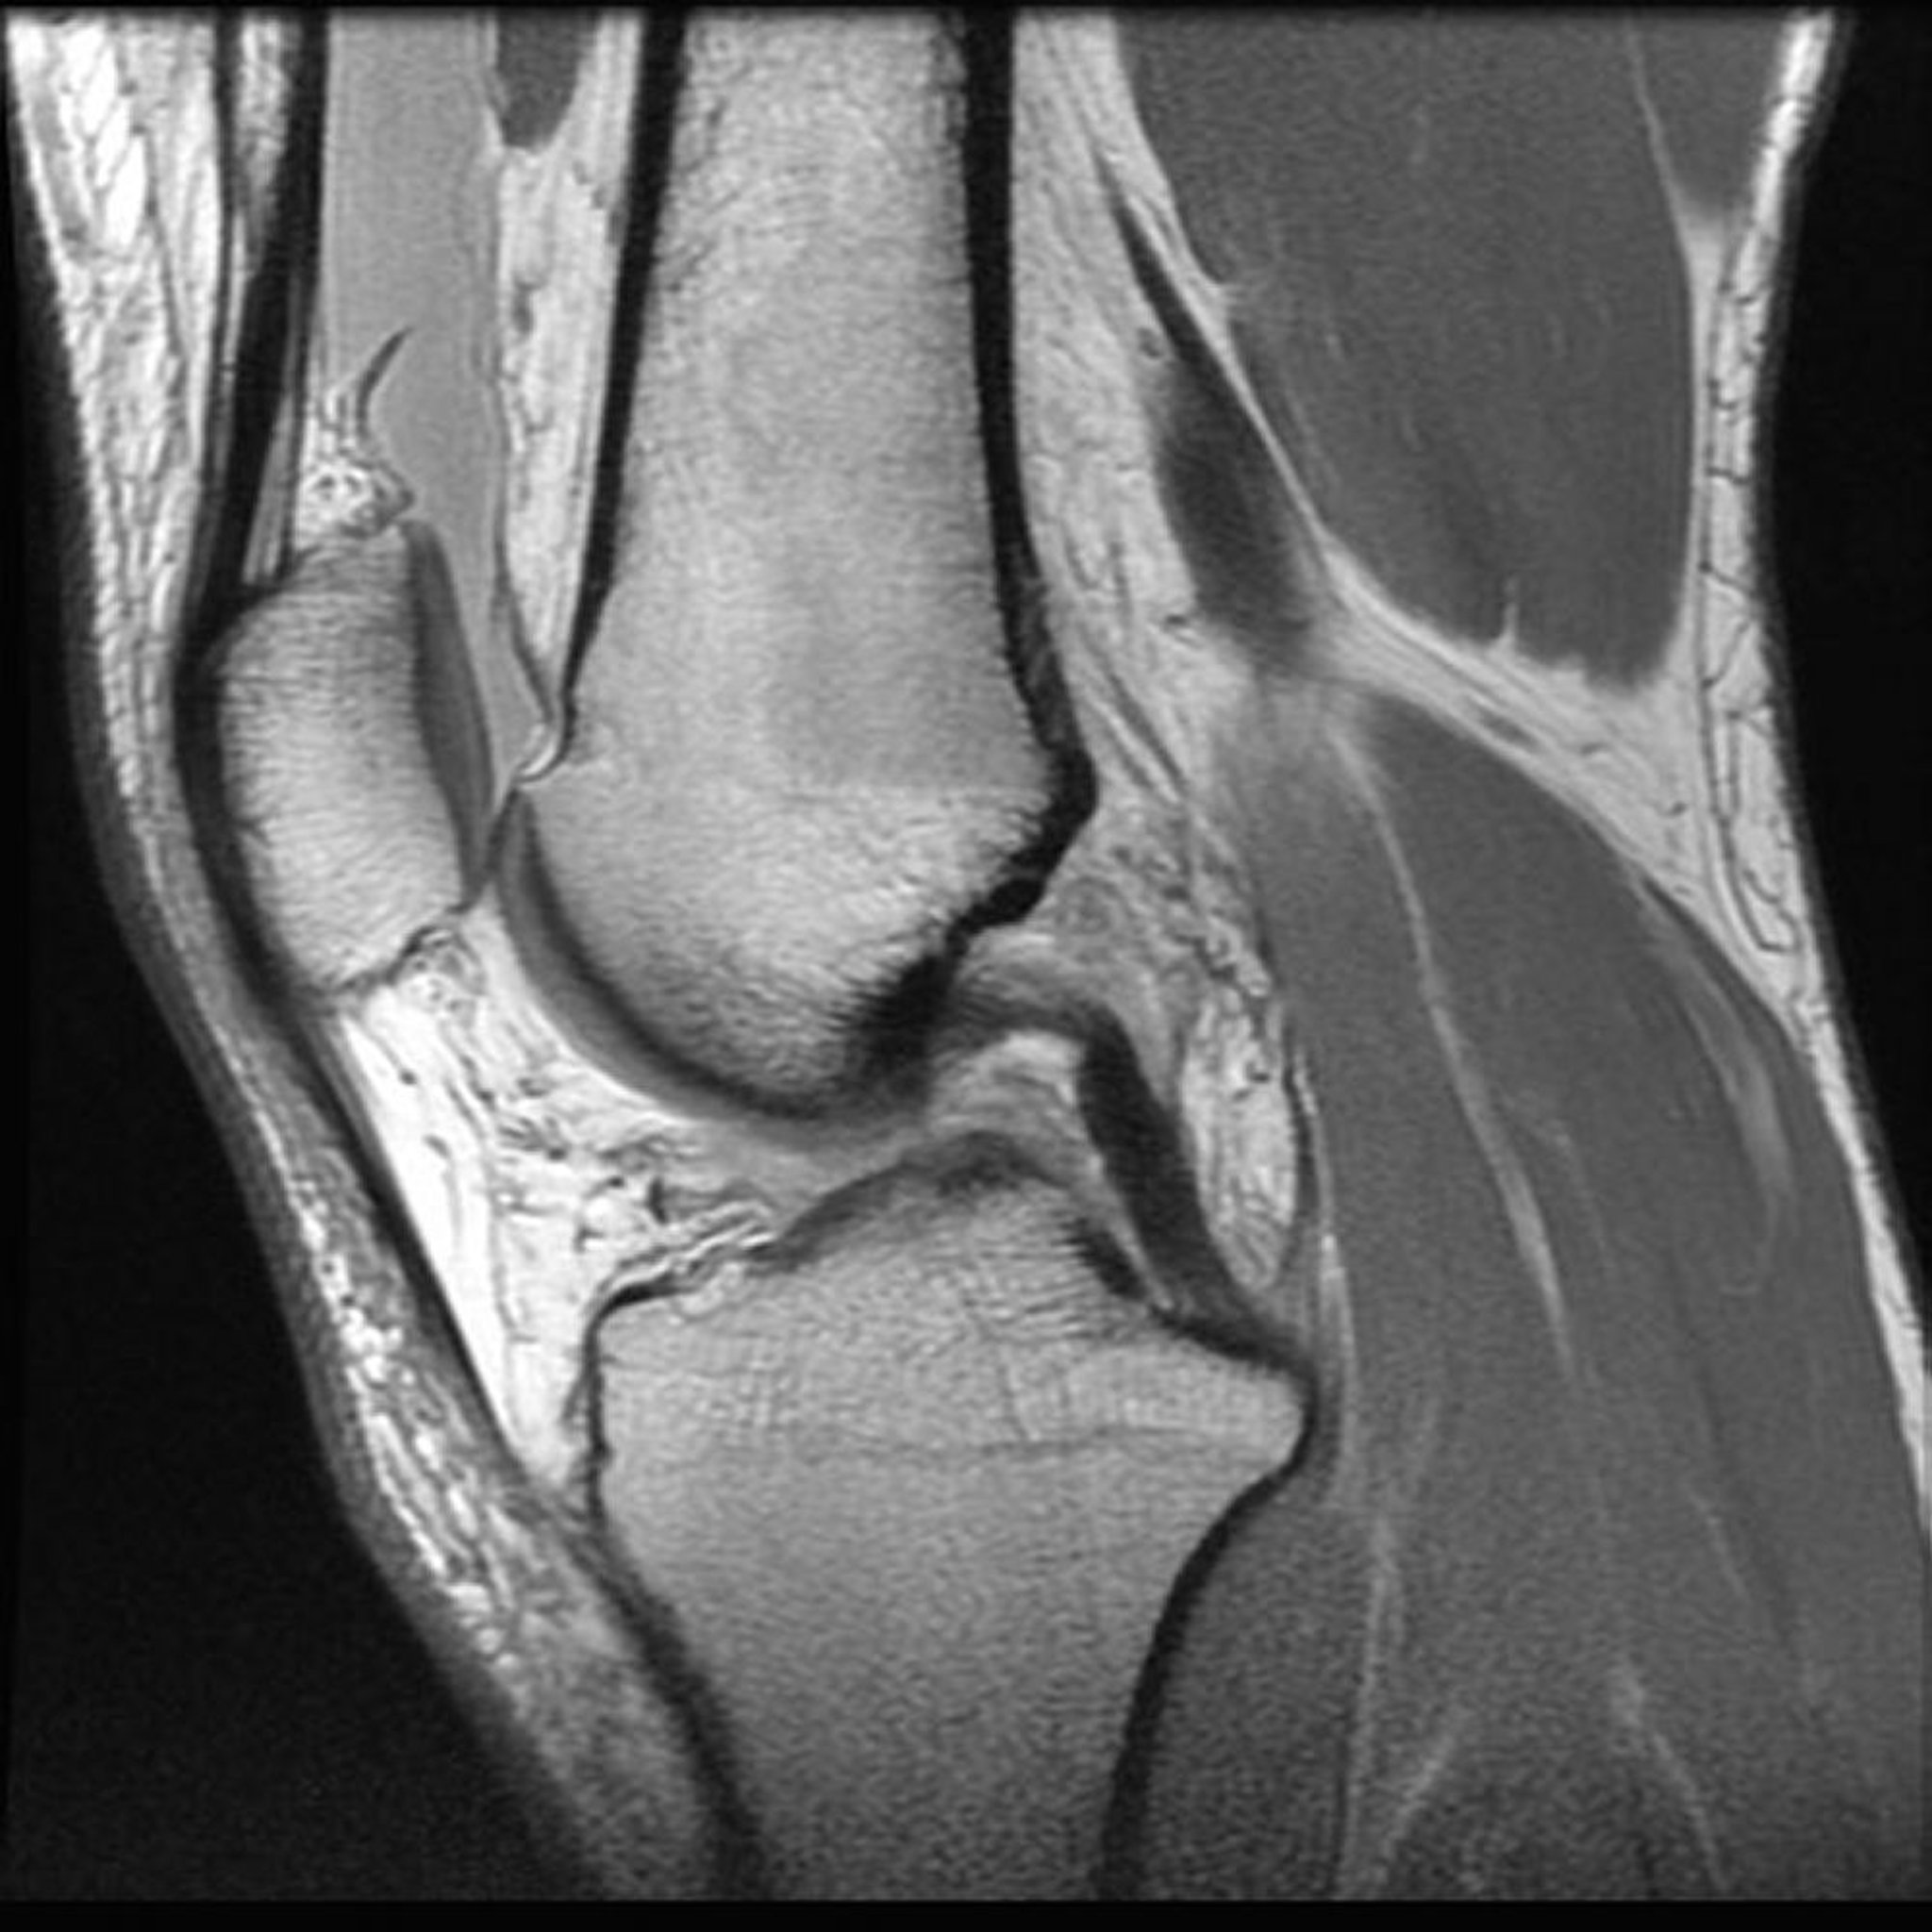 Imagerie par résonance magnétique (IRM) du genou